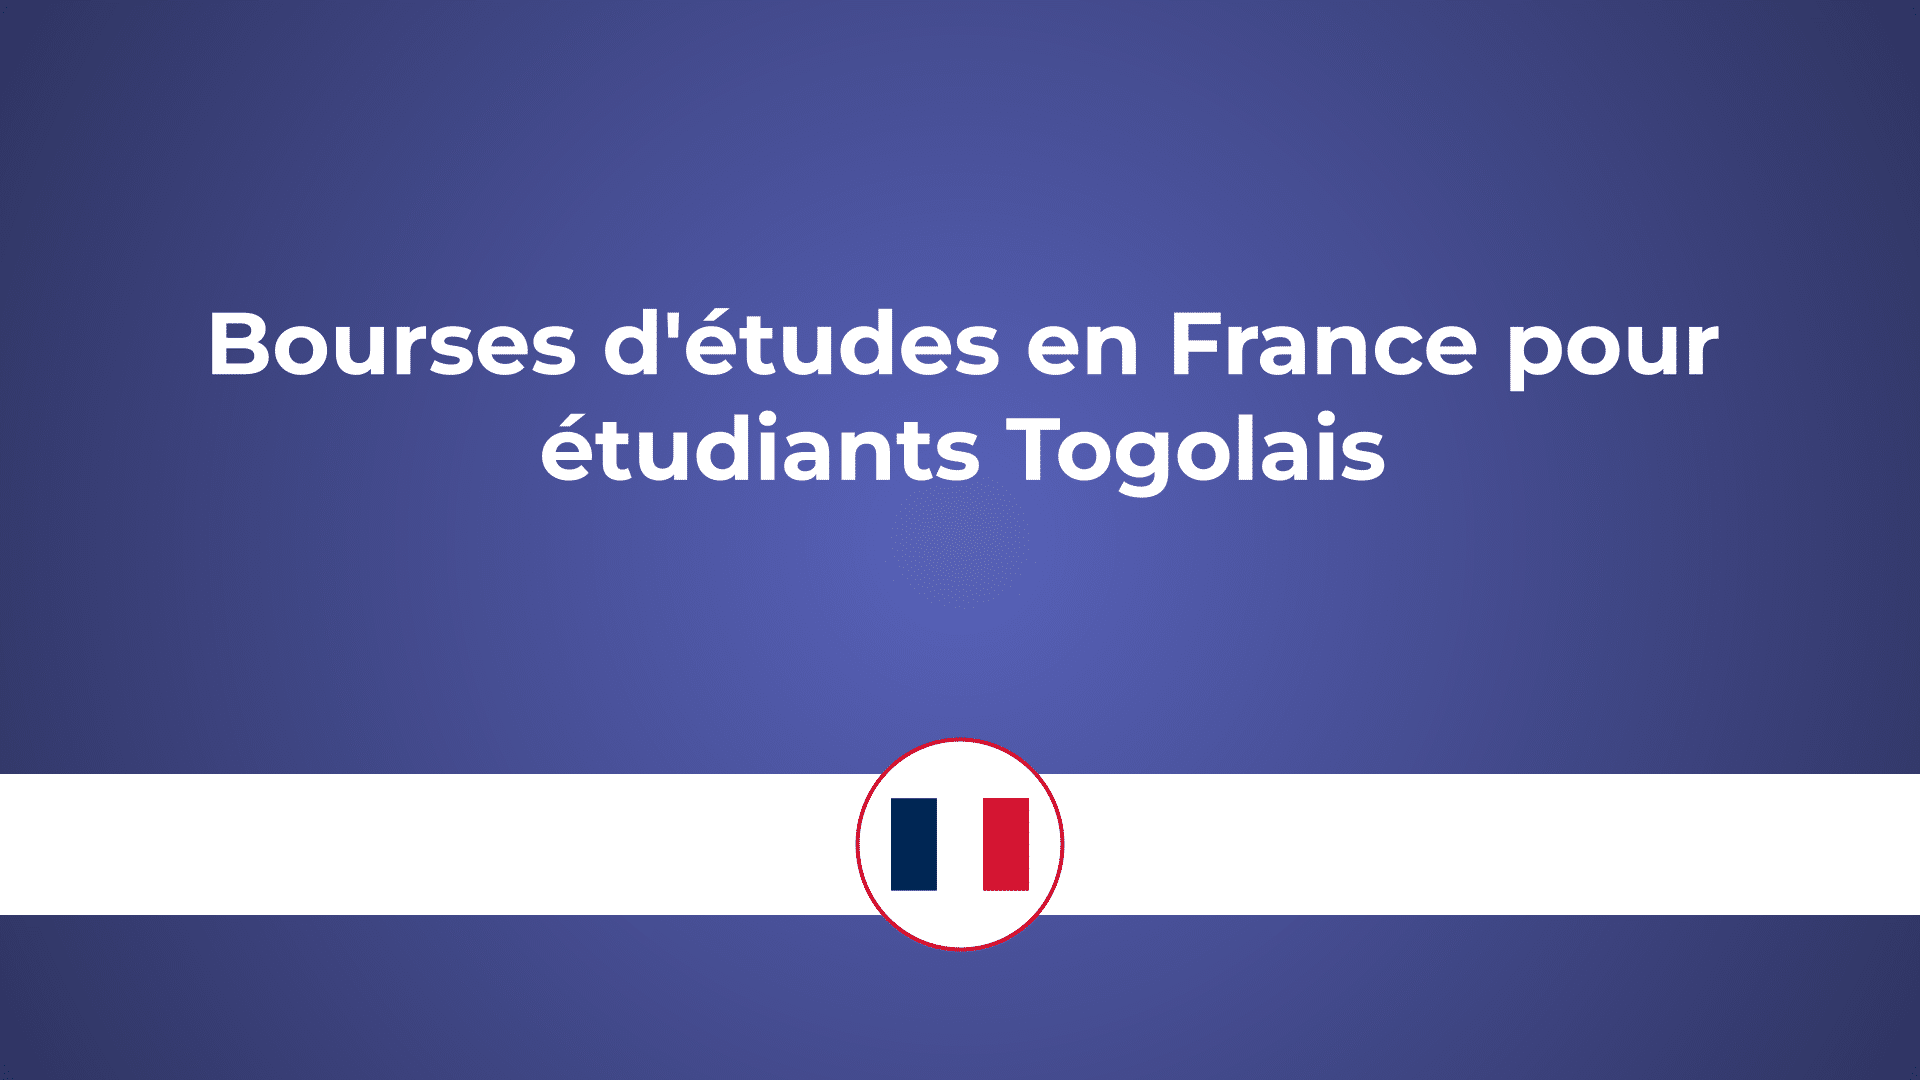 Bourses d'études en France pour étudiants Togolais